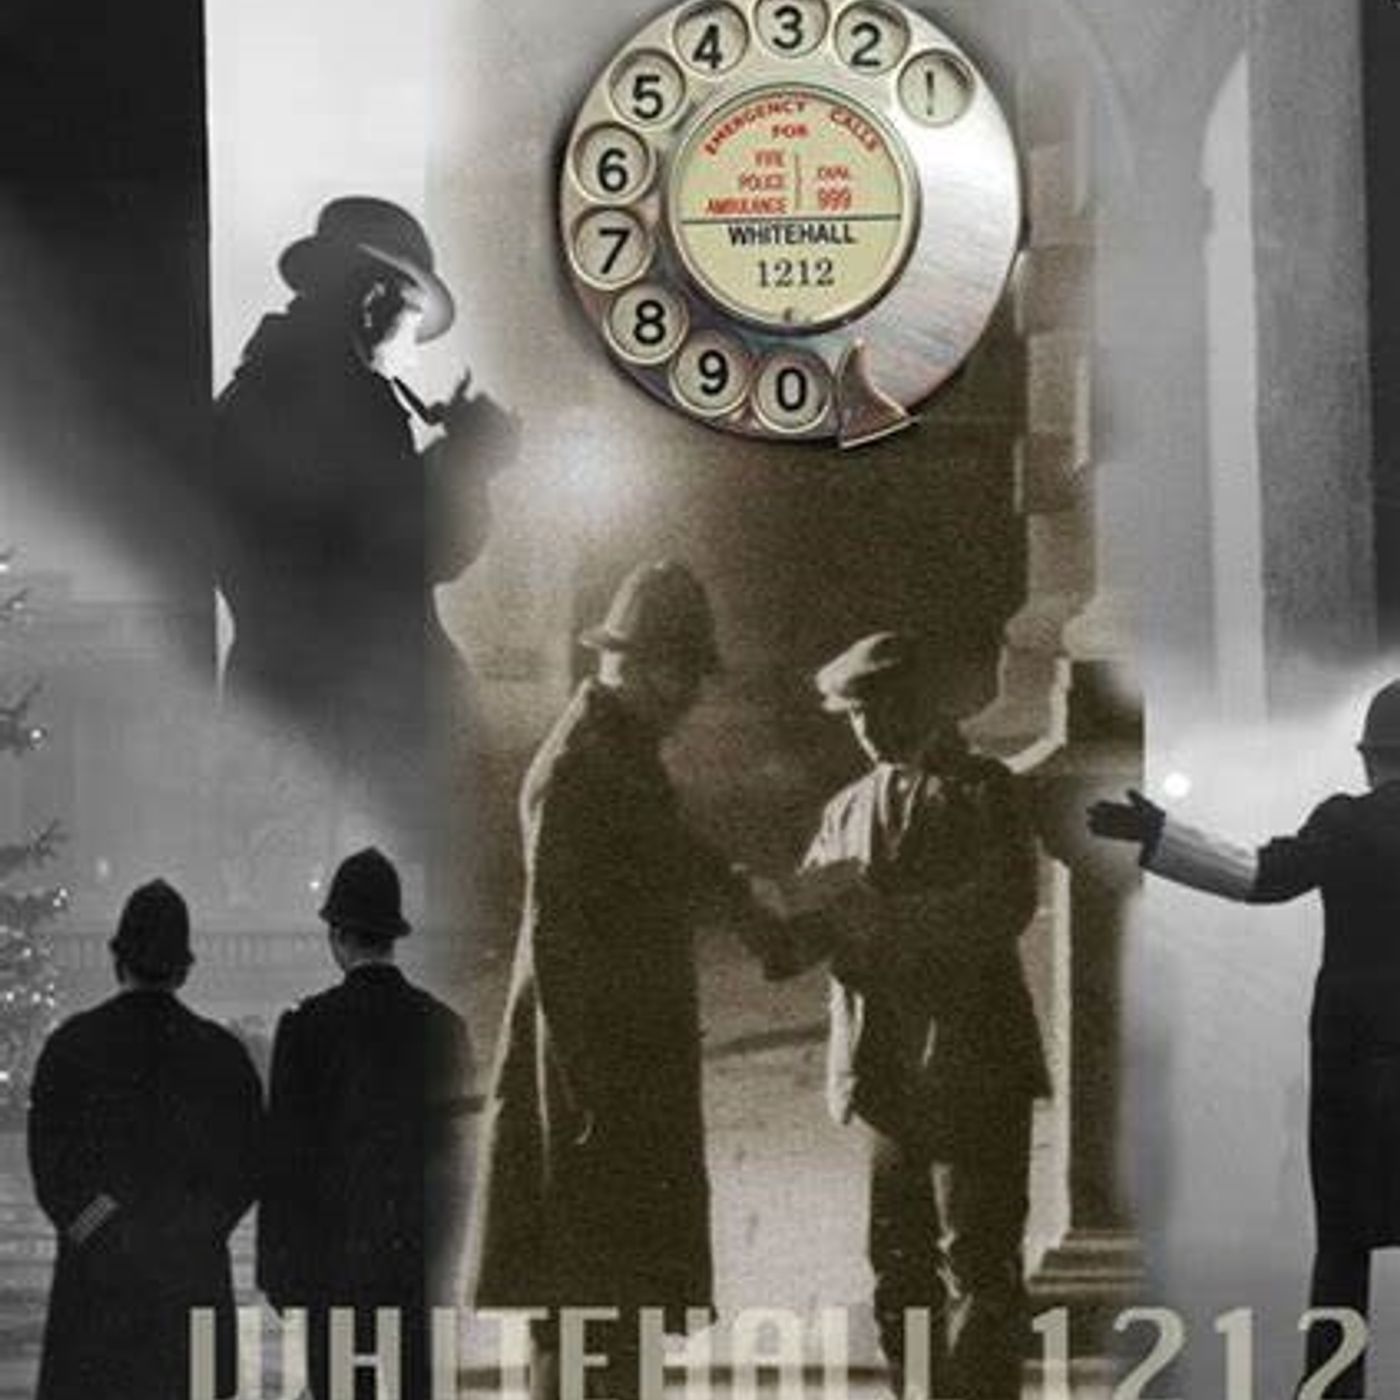 Whitehall 1212 51-11-18 (01) The Blitz Murder Case